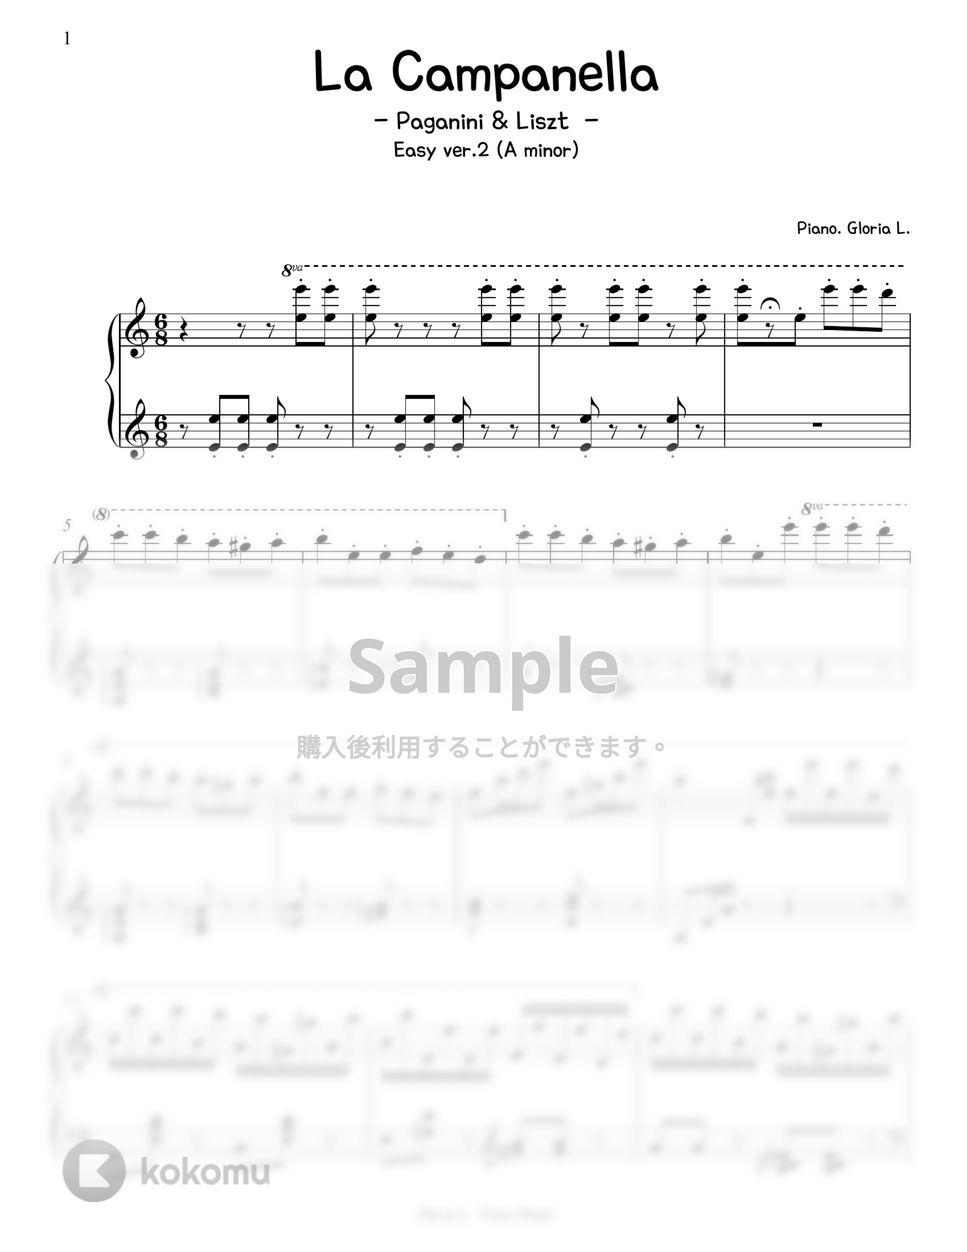 F. Liszt - La Campanella (Easy ver. A minor) by Gloria L.